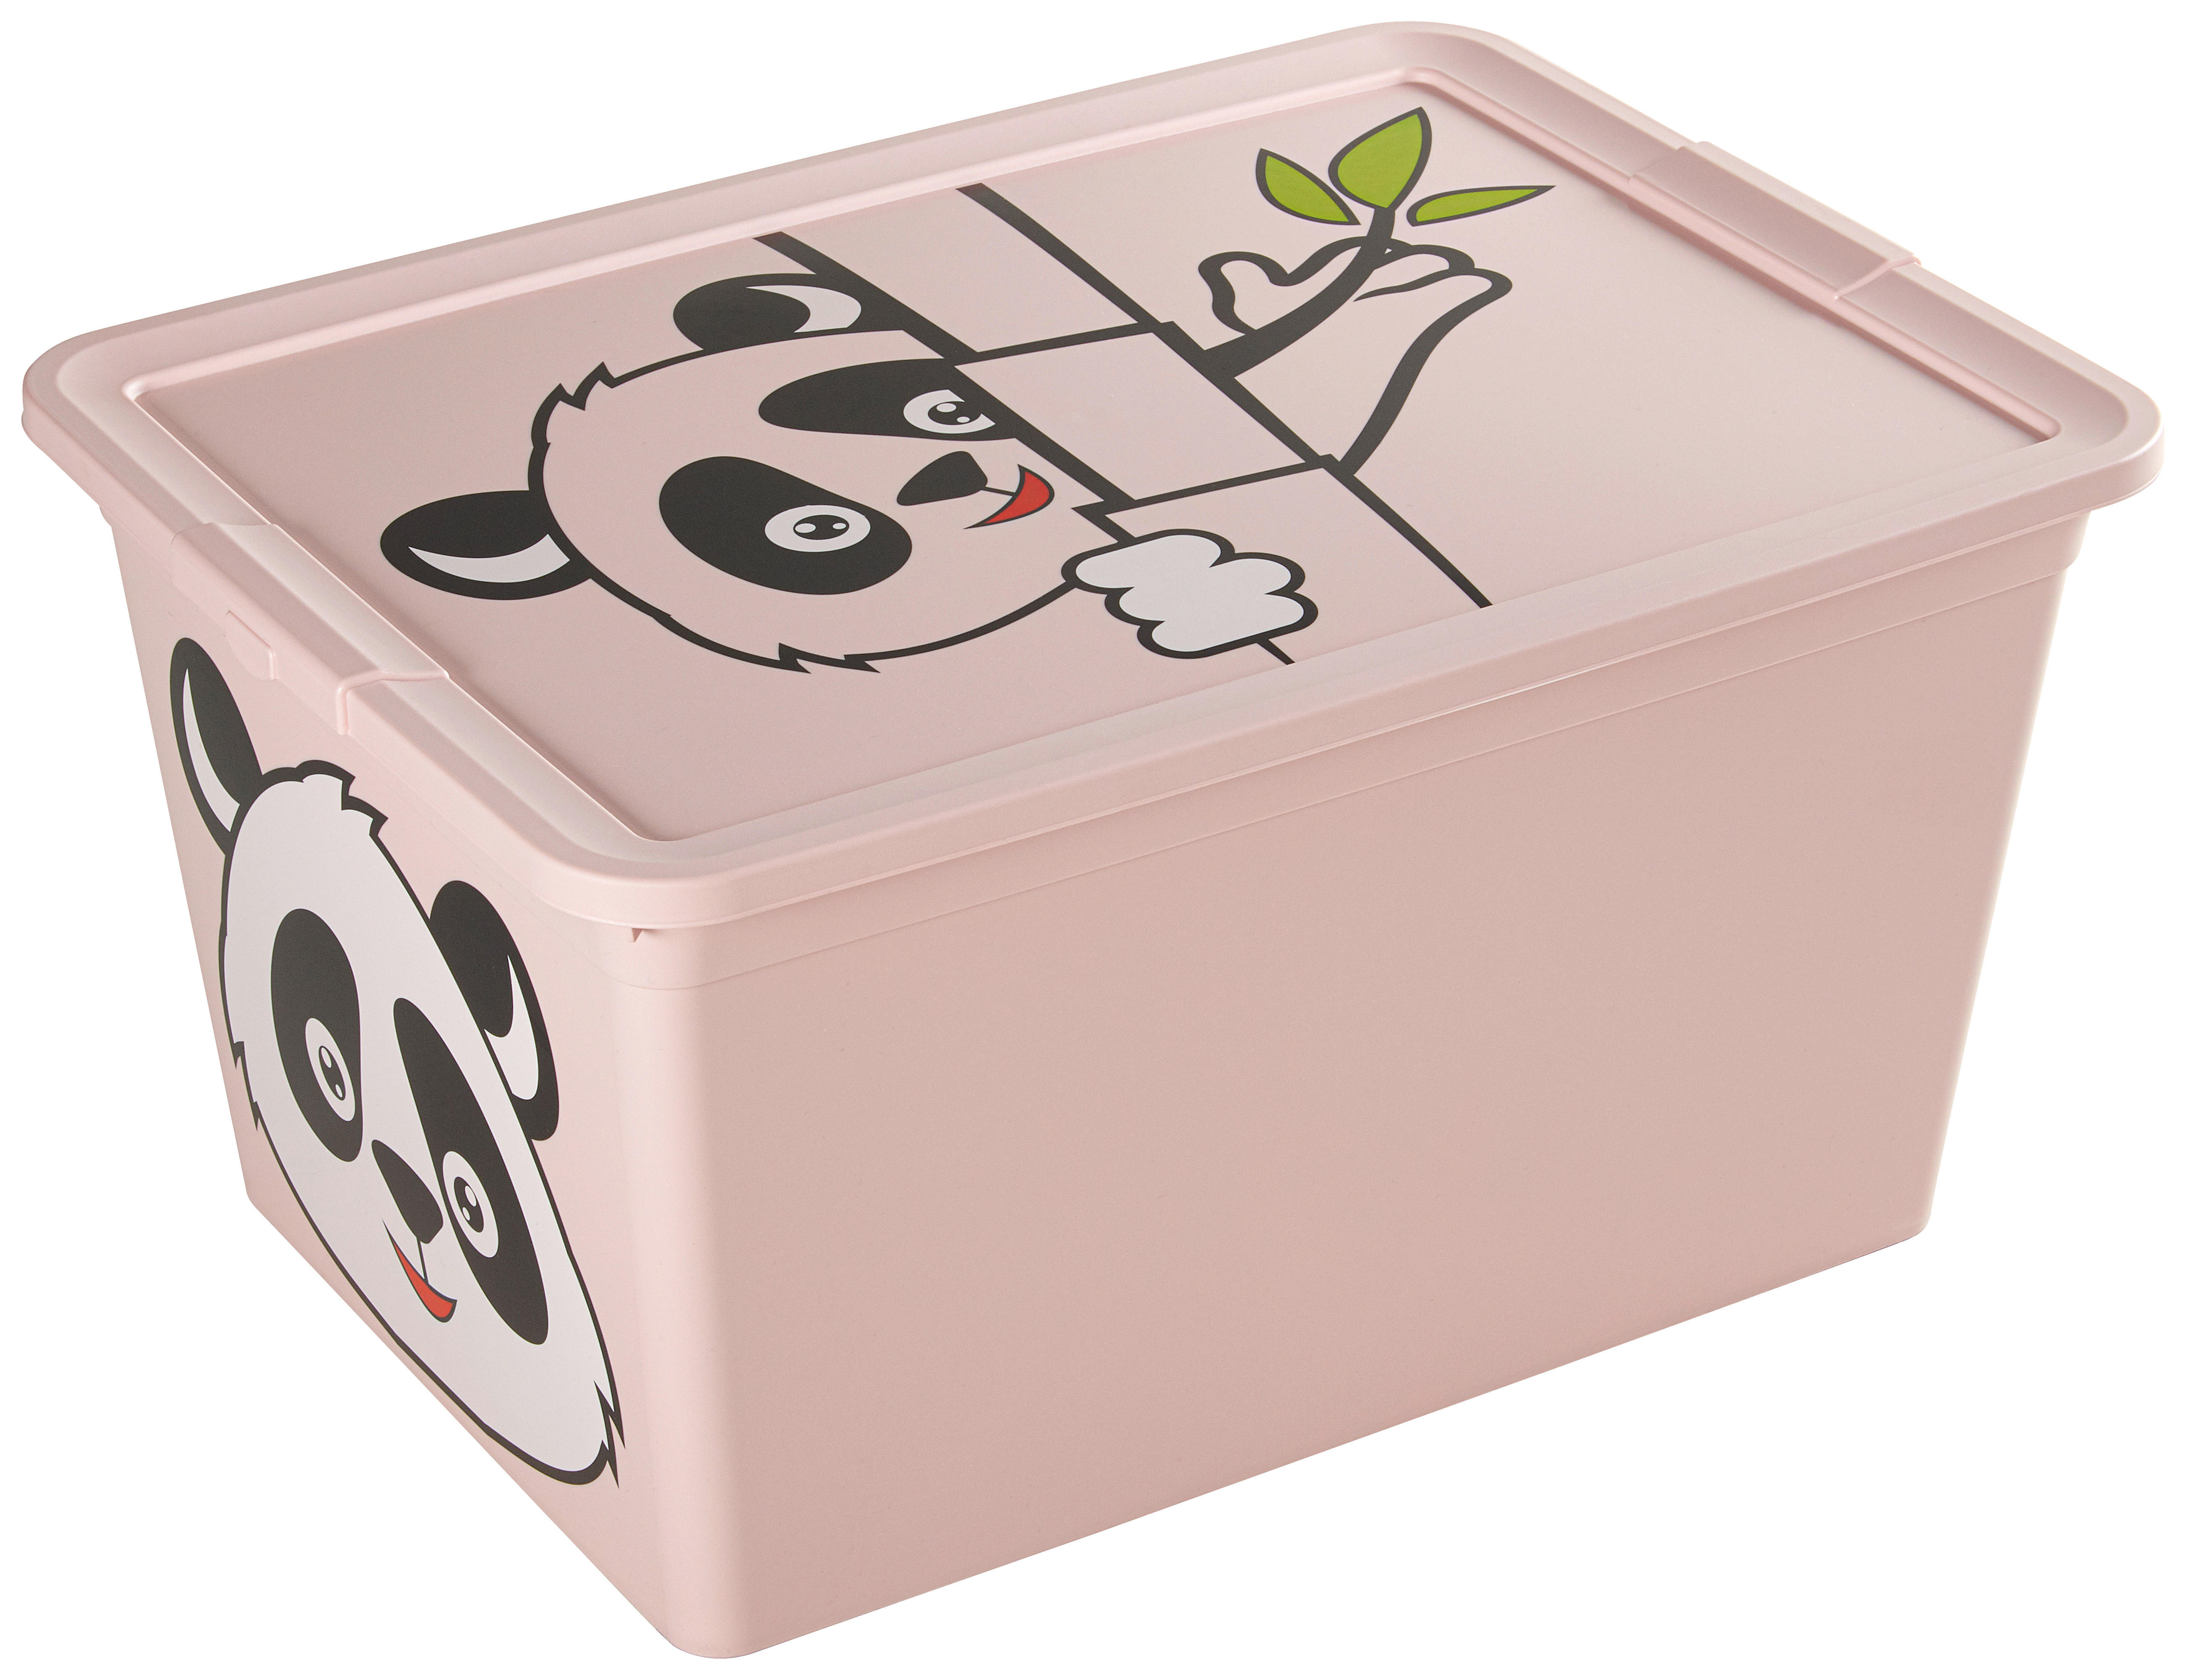 Relaxdays Spielzeugkiste faltbar, Panda, Aufbewahrungsbox mit Stauraum &  Deckel, gepolstert, HBT 34 x 49 x 31 cm, weiß